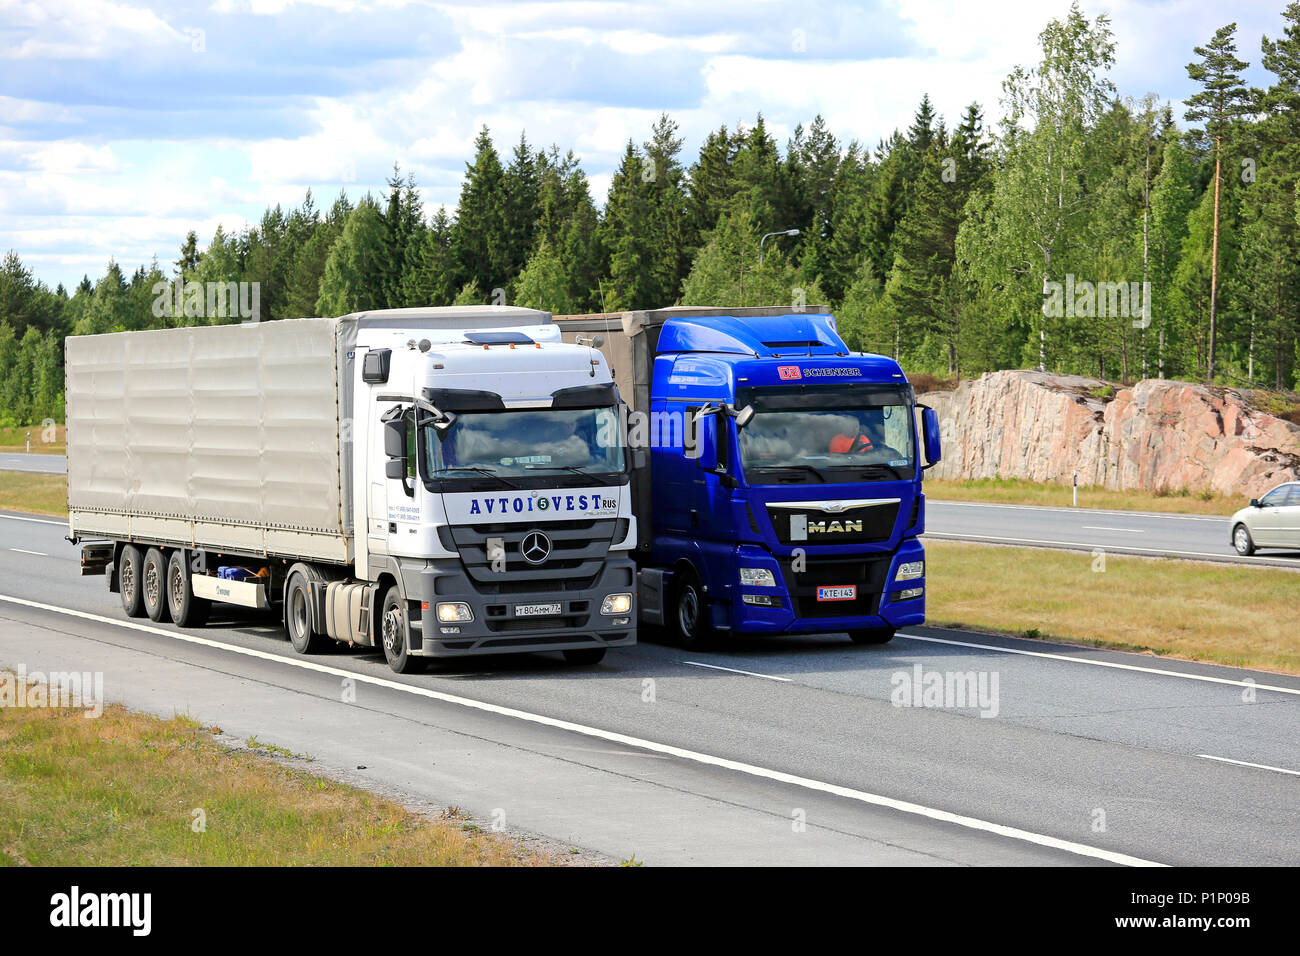 Blue Man halb Lkw überholt einen Lkw auf der Autobahn im Sommer. Lkw mit schwerer Ladung kann viel langsamer bergauf. Salo, Finnland - 8. Juni 2018. Stockfoto